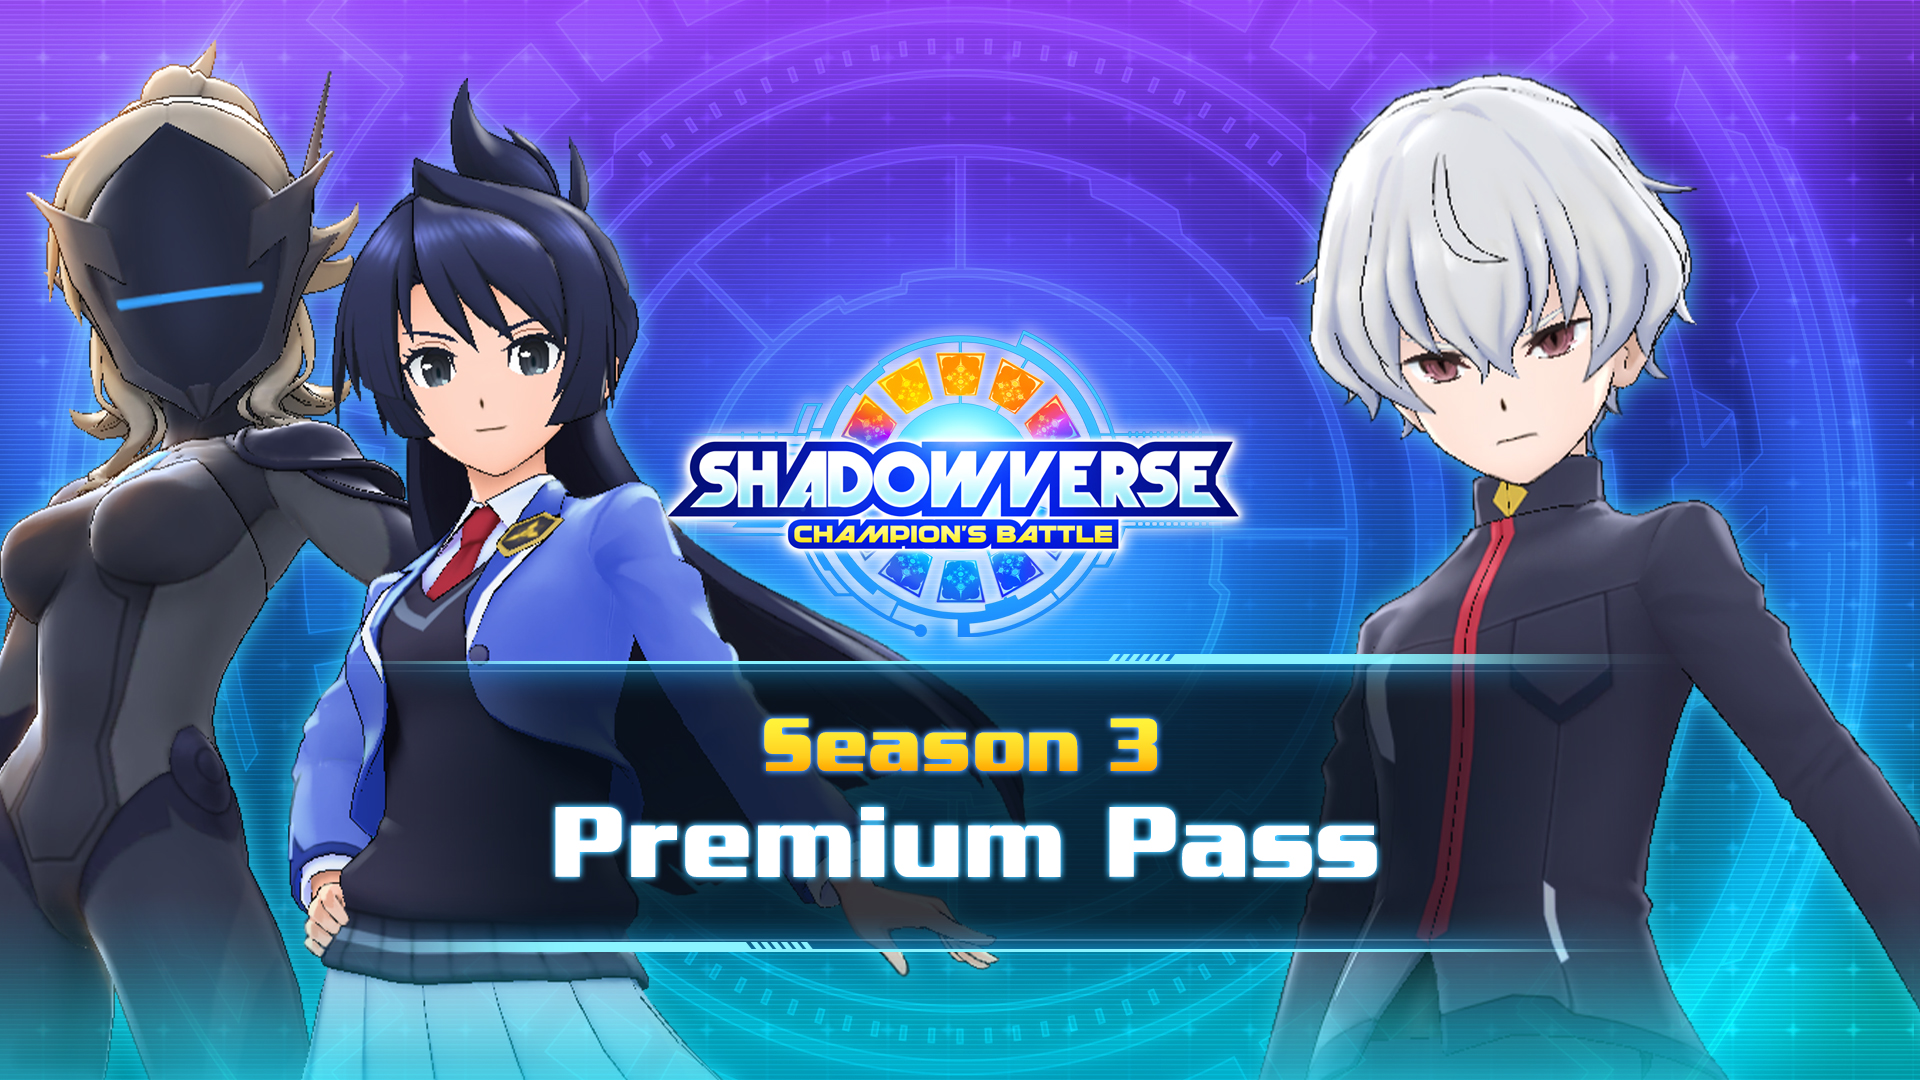 Season 3 Premium Pass